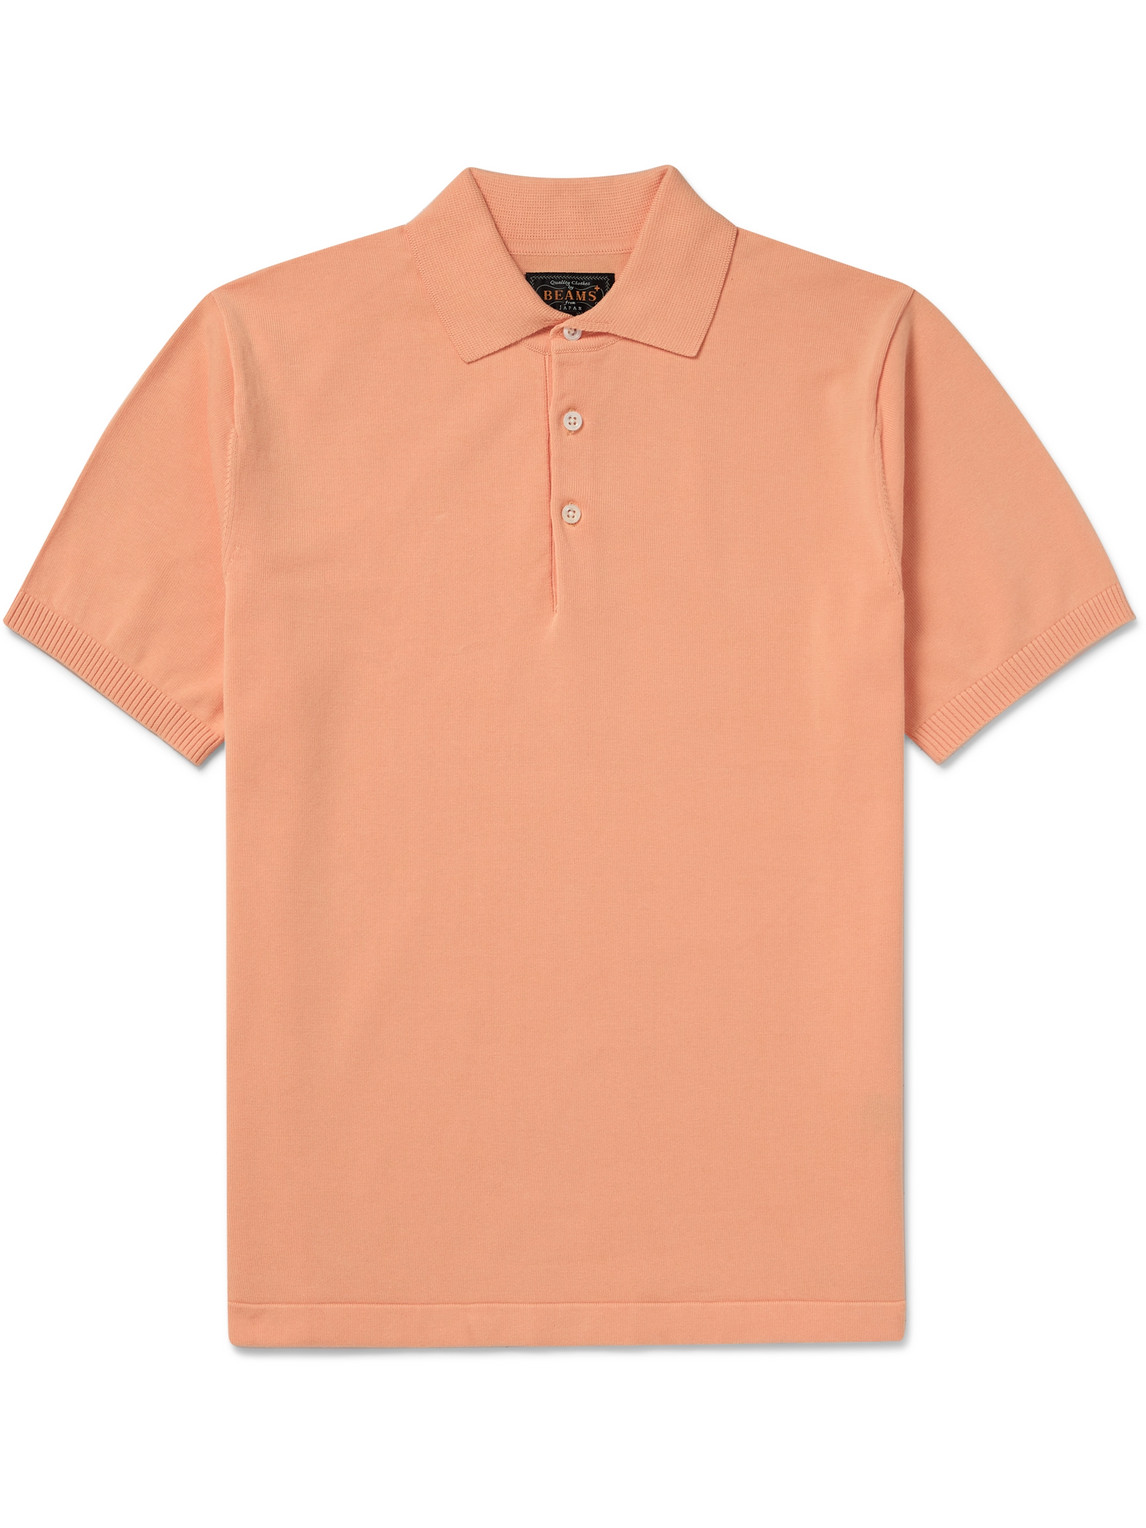 Beams Plus - Cotton Polo Shirt - Men - Orange - S von Beams Plus